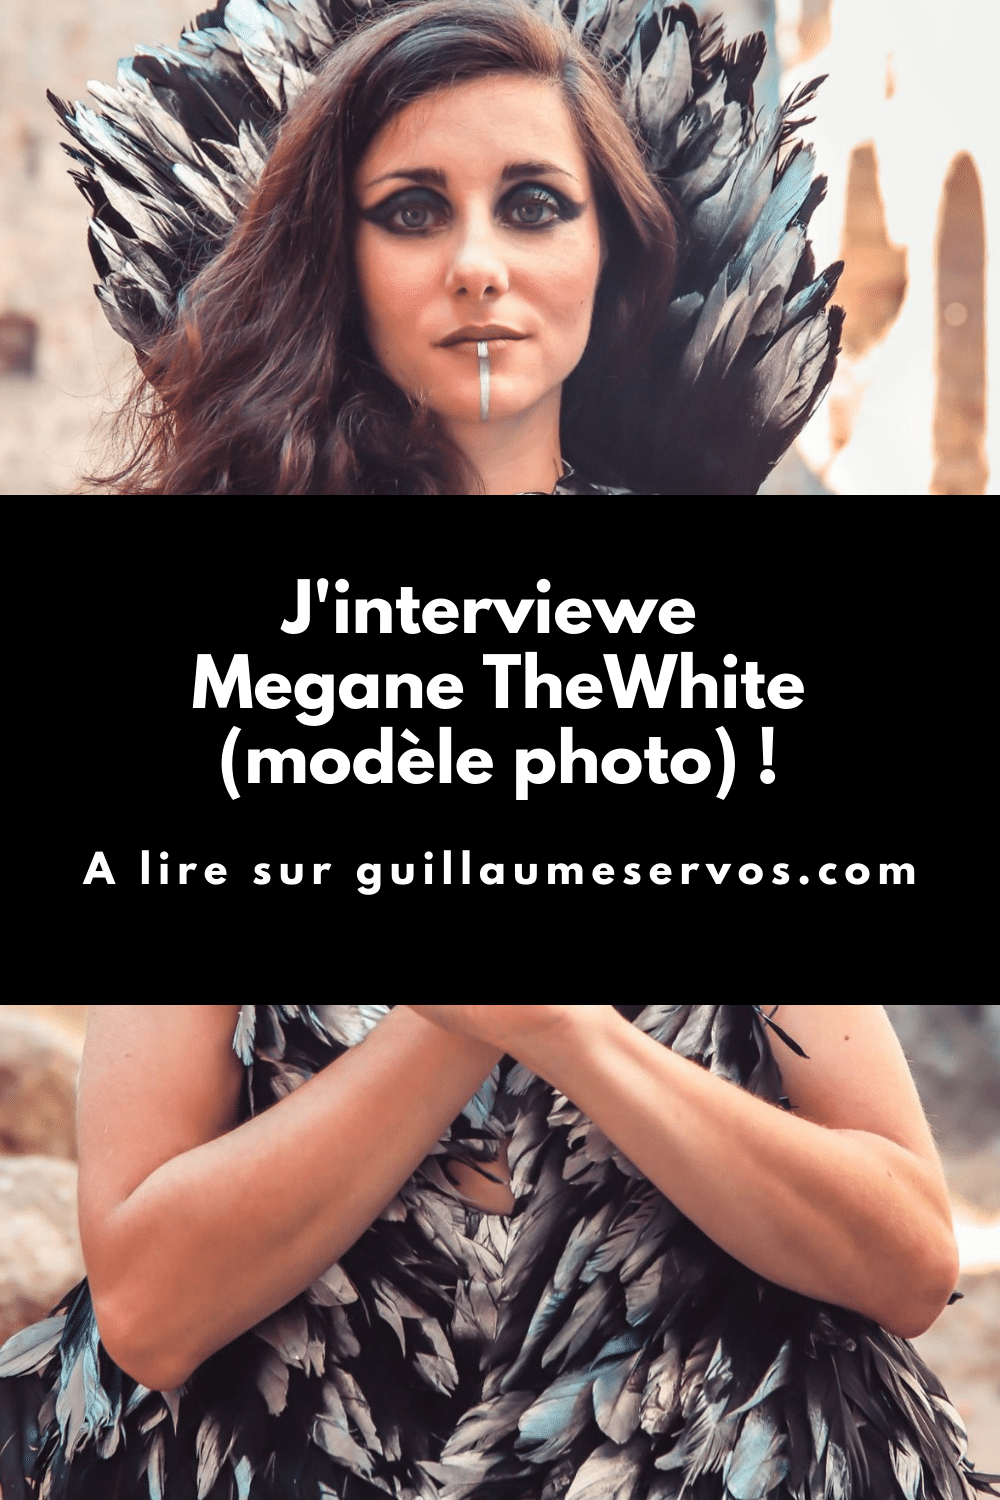 Découvre mon interview avec Megane TheWhite, modèle photo. Au menu : son rapport à la photographie, aux réseaux sociaux et au voyage.